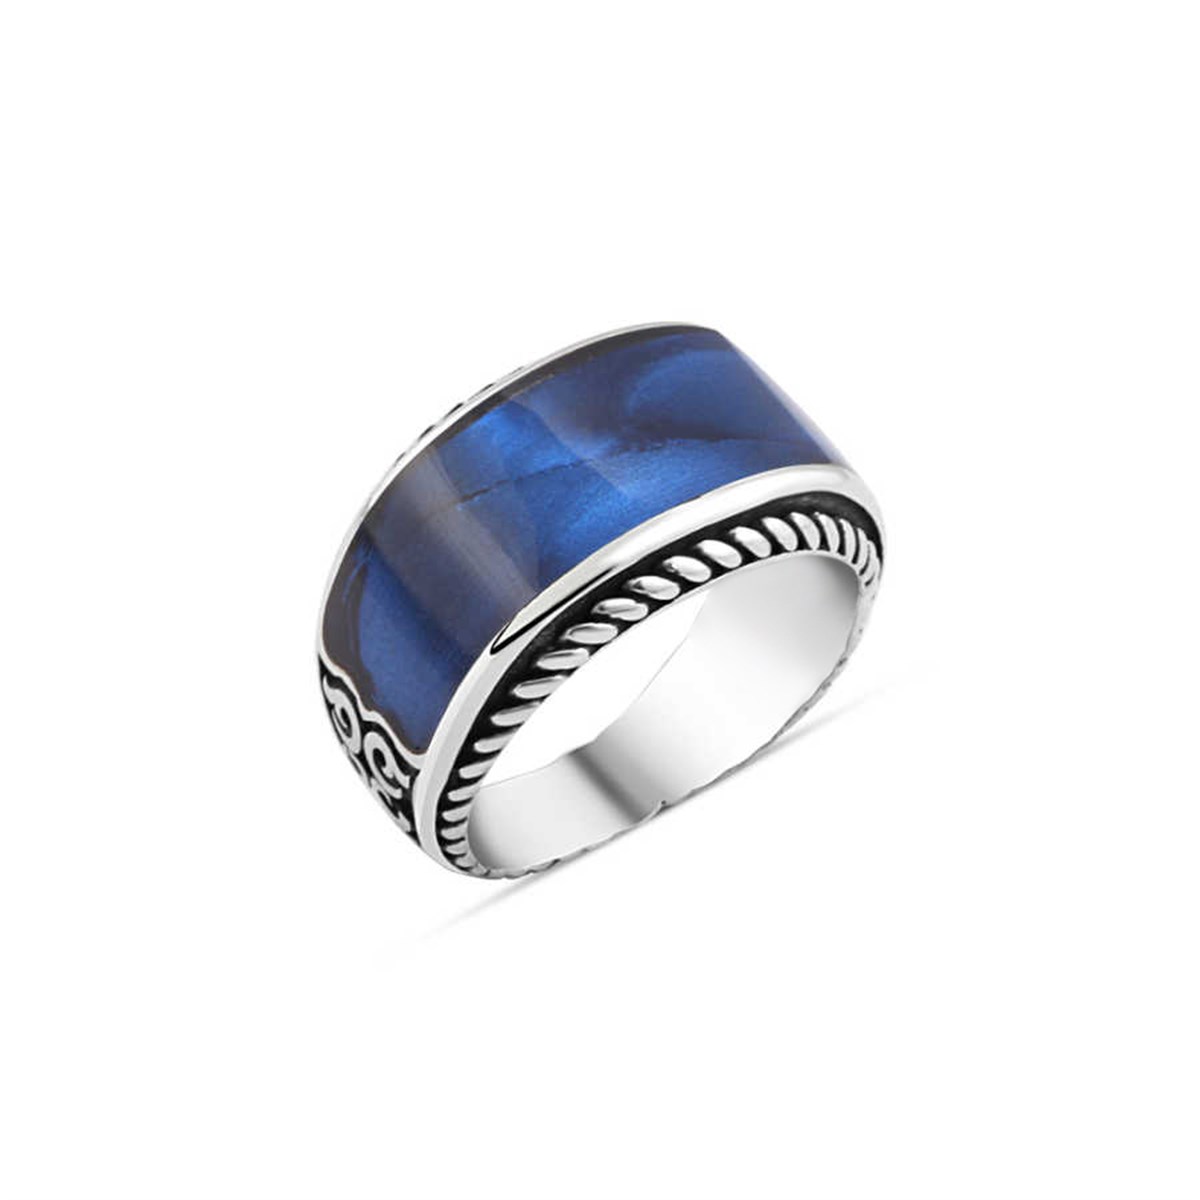 Enamel Silver Men's Ring